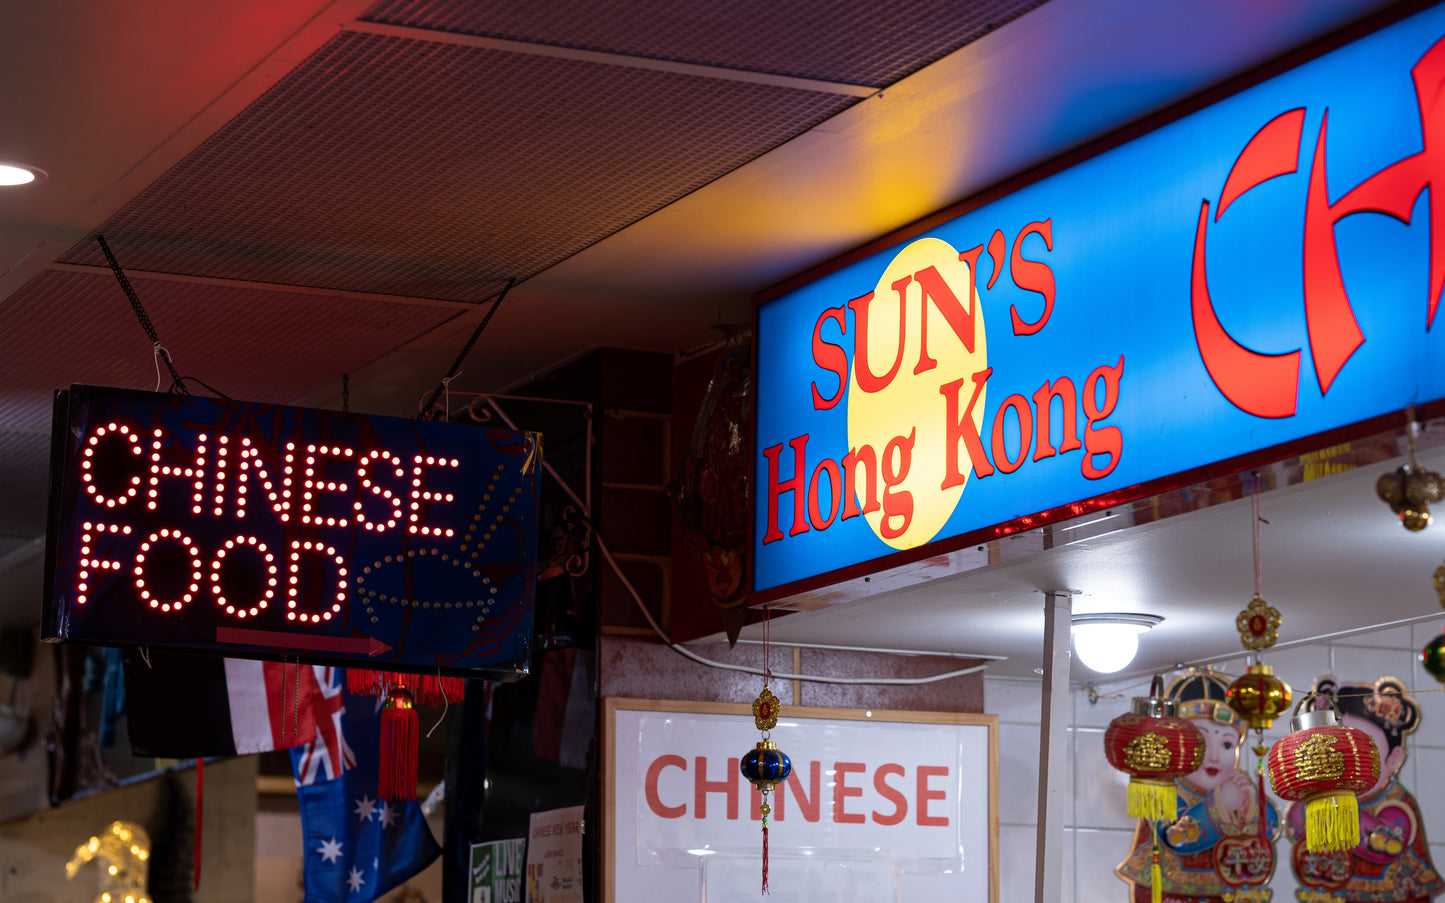 03 - Sun's Hong Kong Chinese